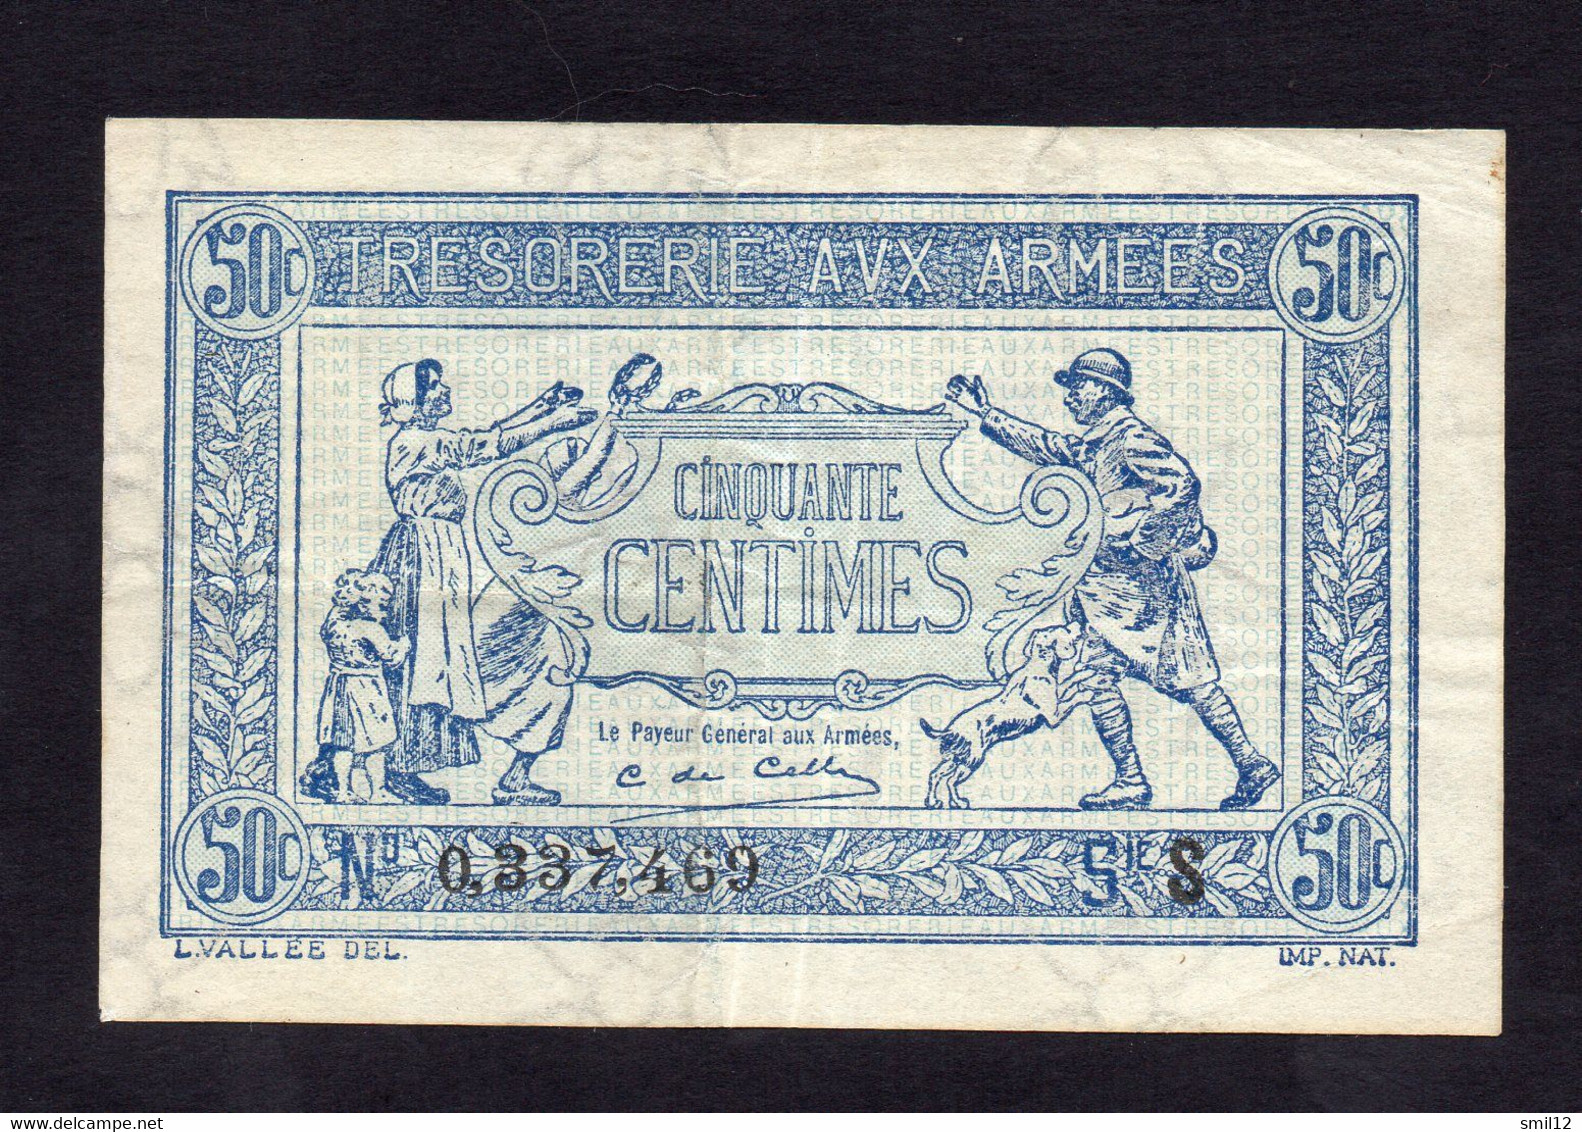 Trésorerie Aux Armées - 50 Centimes - Lettre S (2) - 1917-1919 Armeekasse